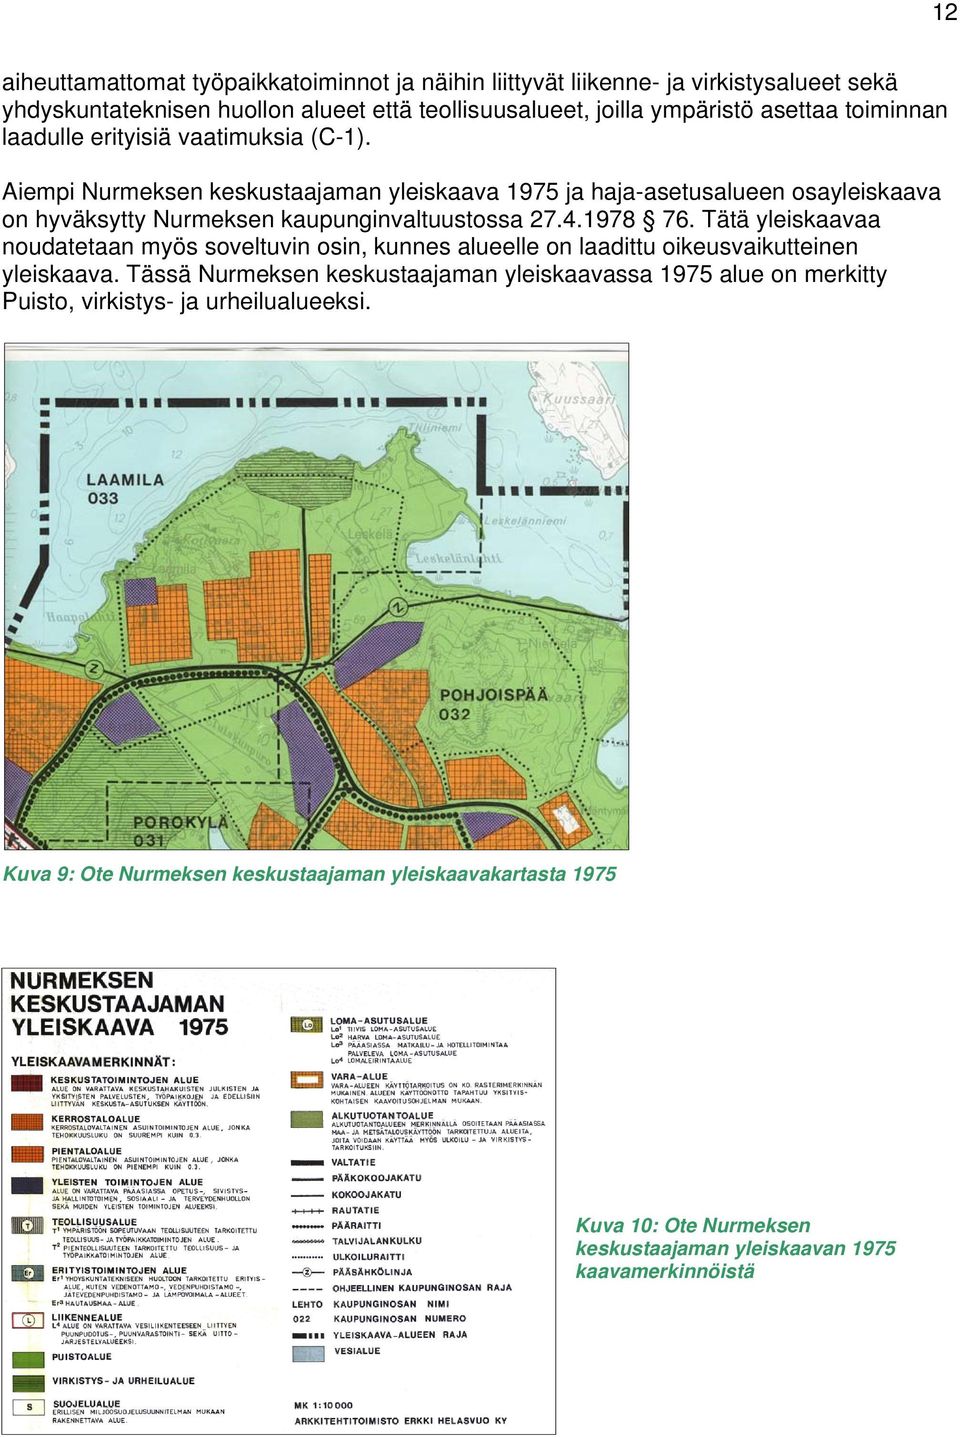 Aiempi Nurmeksen keskustaajaman yleiskaava 1975 ja haja-asetusalueen osayleiskaava on hyväksytty Nurmeksen kaupunginvaltuustossa 27.4.1978 76.